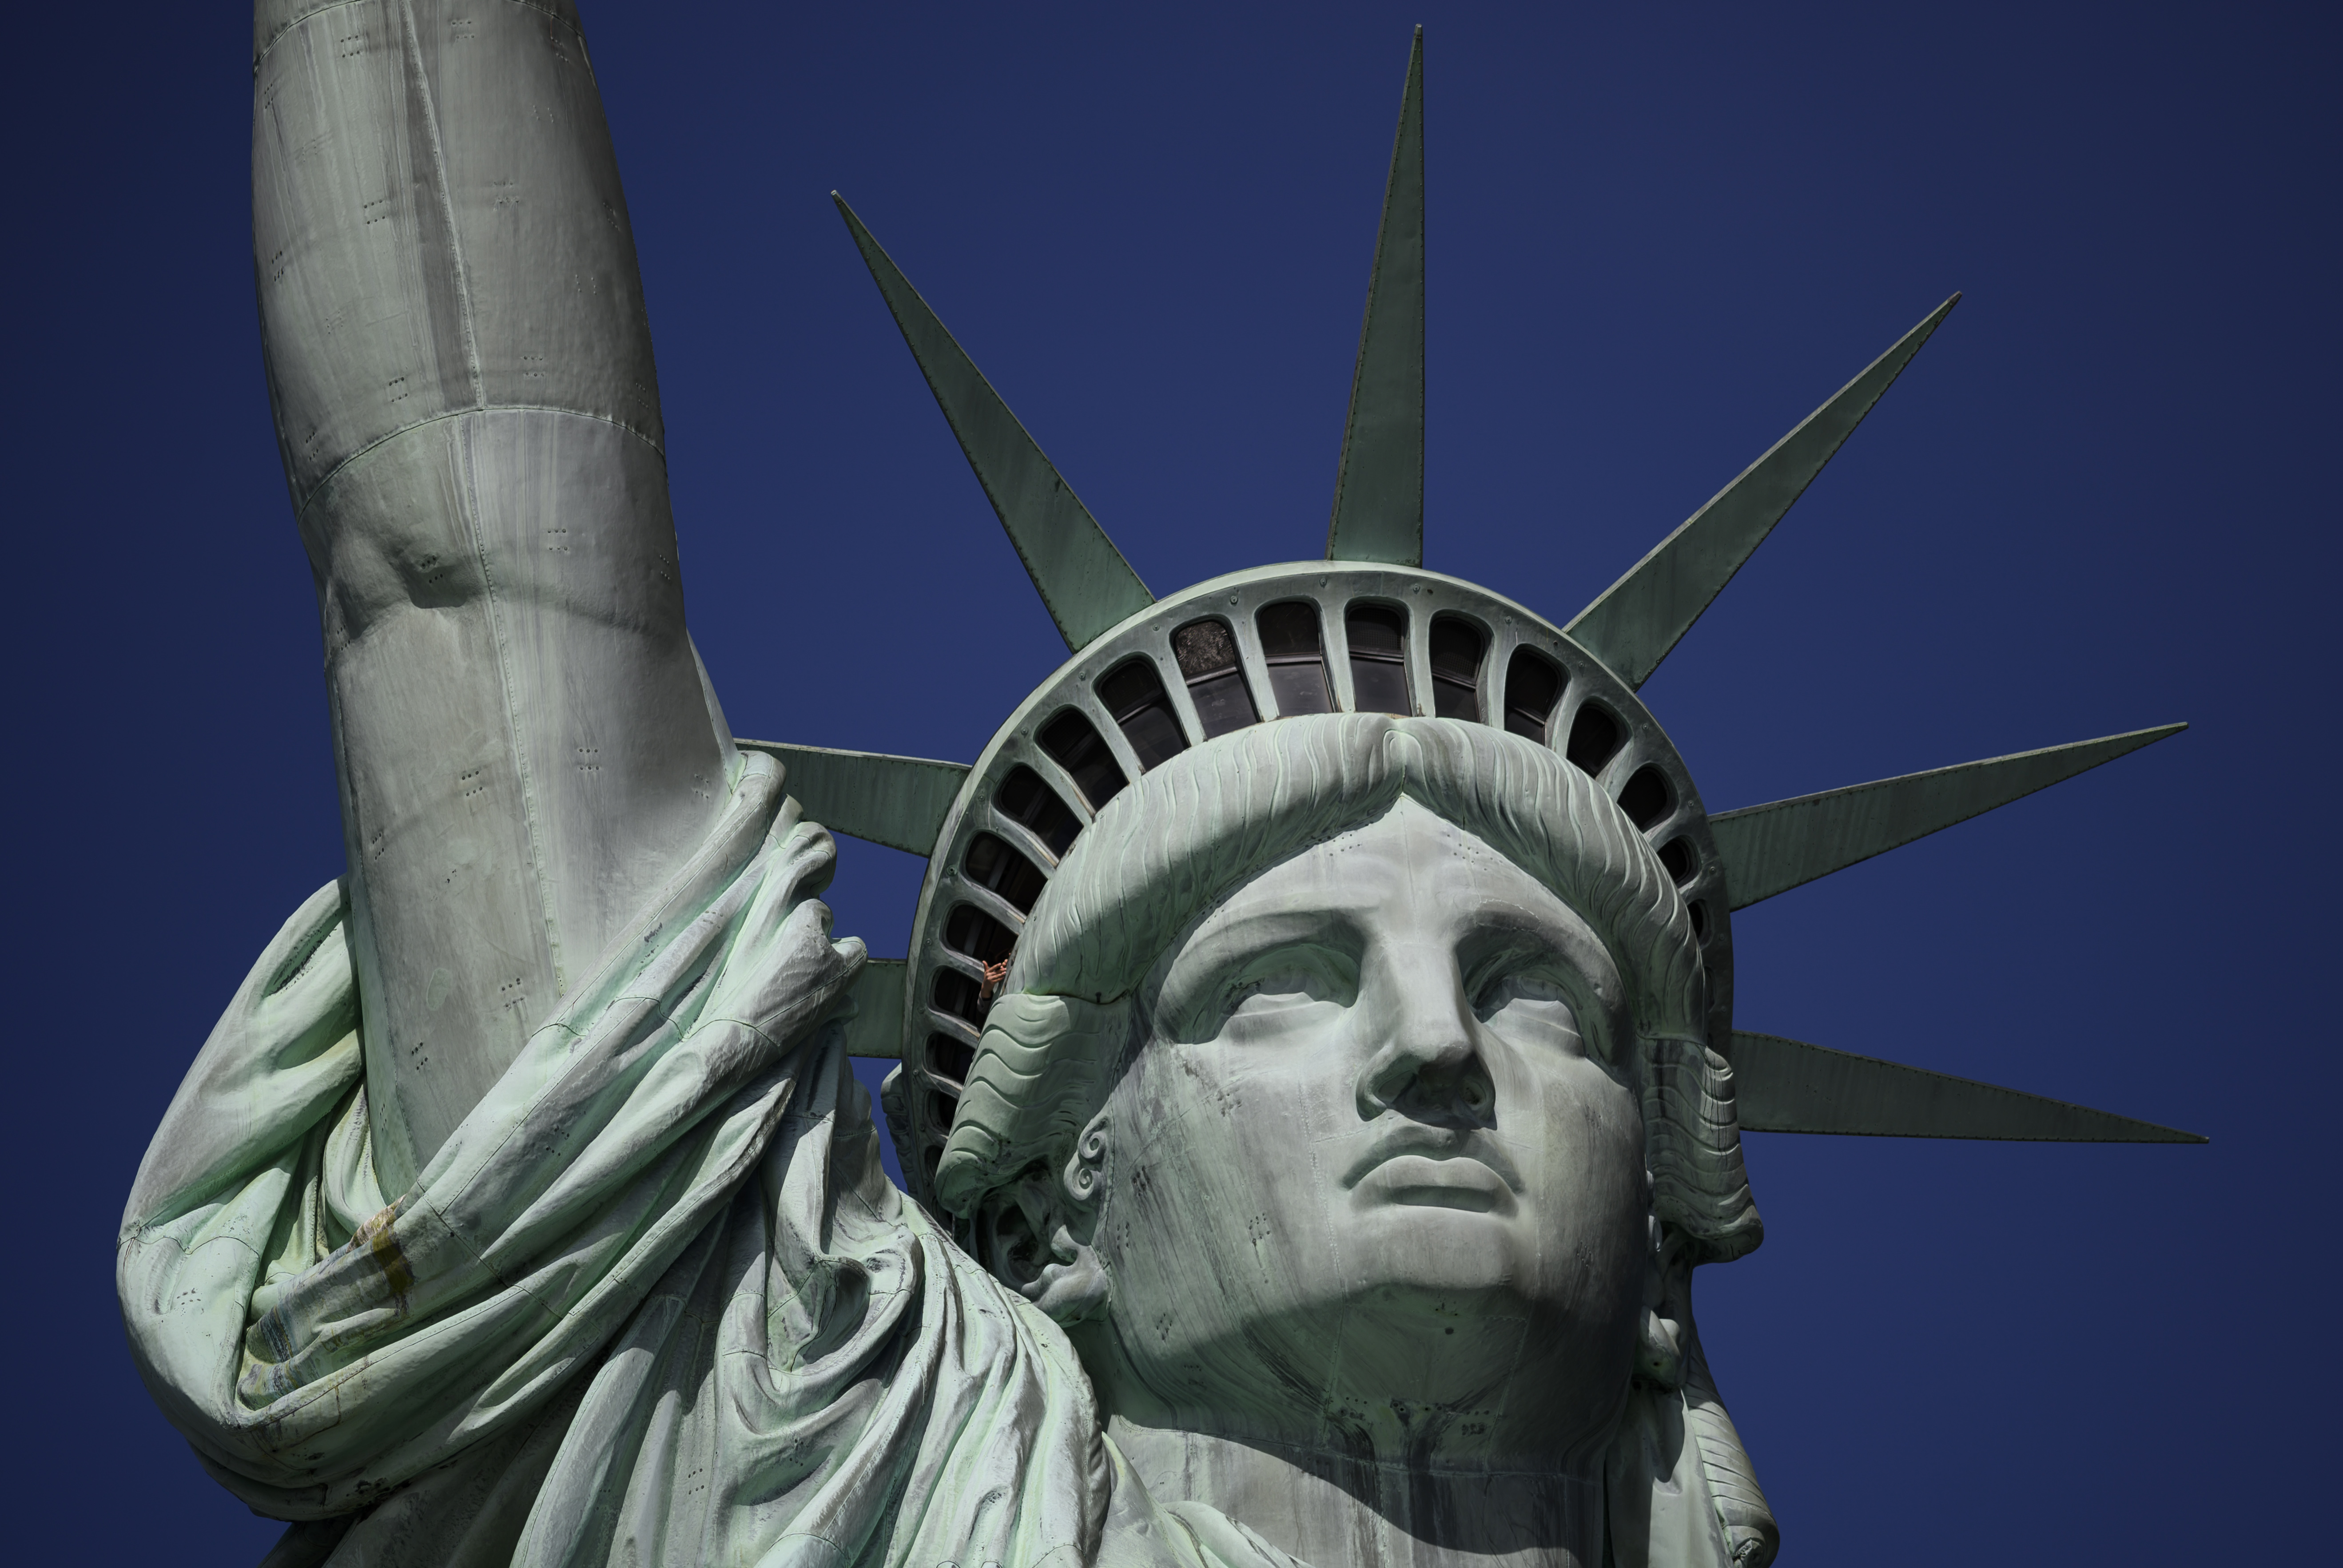 什么 美国自由女神像原先不是绿色 纽约 地标 颜色 大纪元